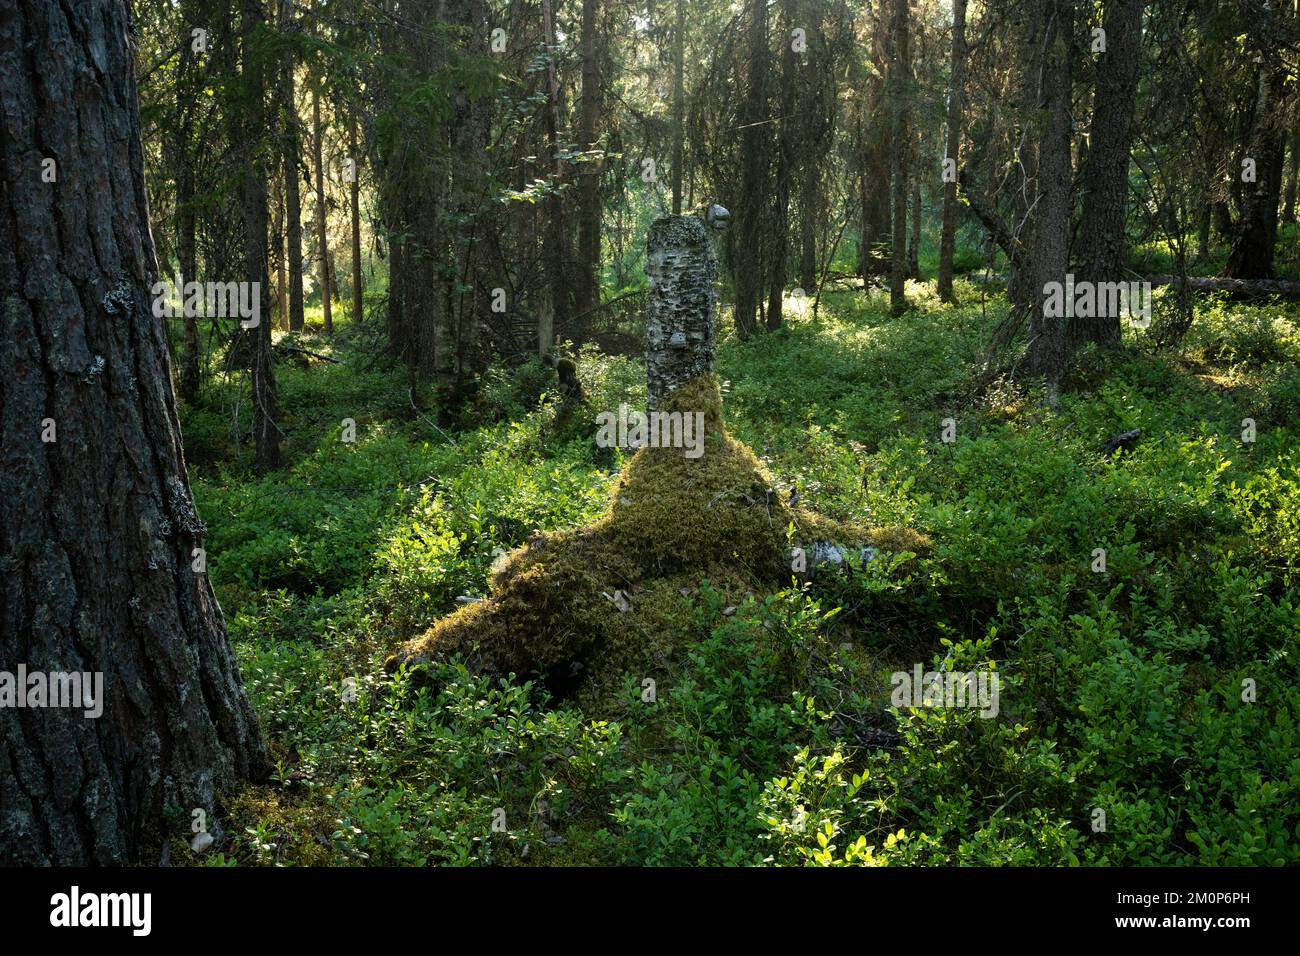 An old-growth summery taiga forest with some deadwood in Närängänvaara near Kuusamo, Northern Finland Stock Photo